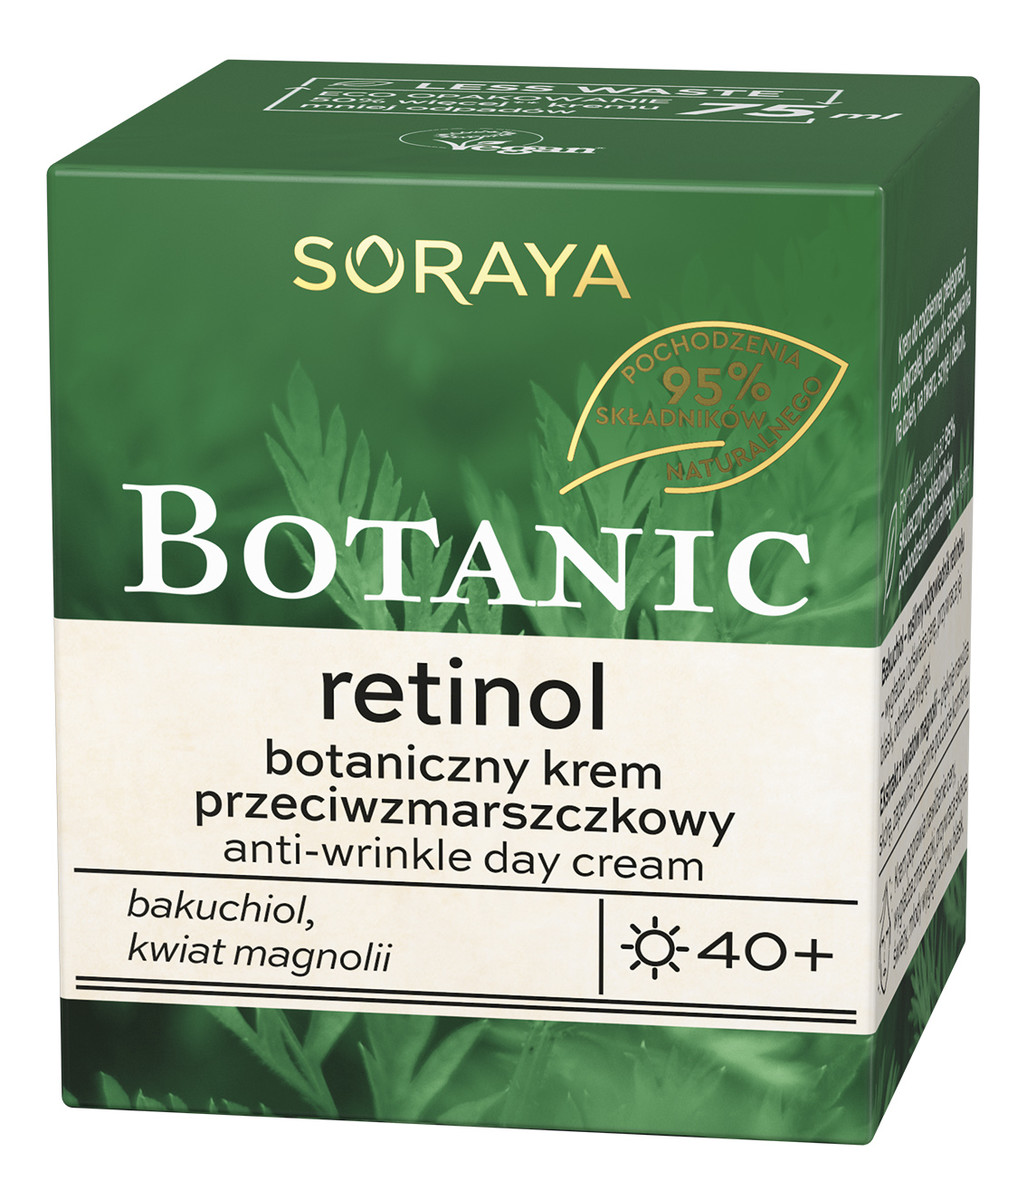 Retinol 40+ botaniczny krem przeciwzmarszczkowy na dzień